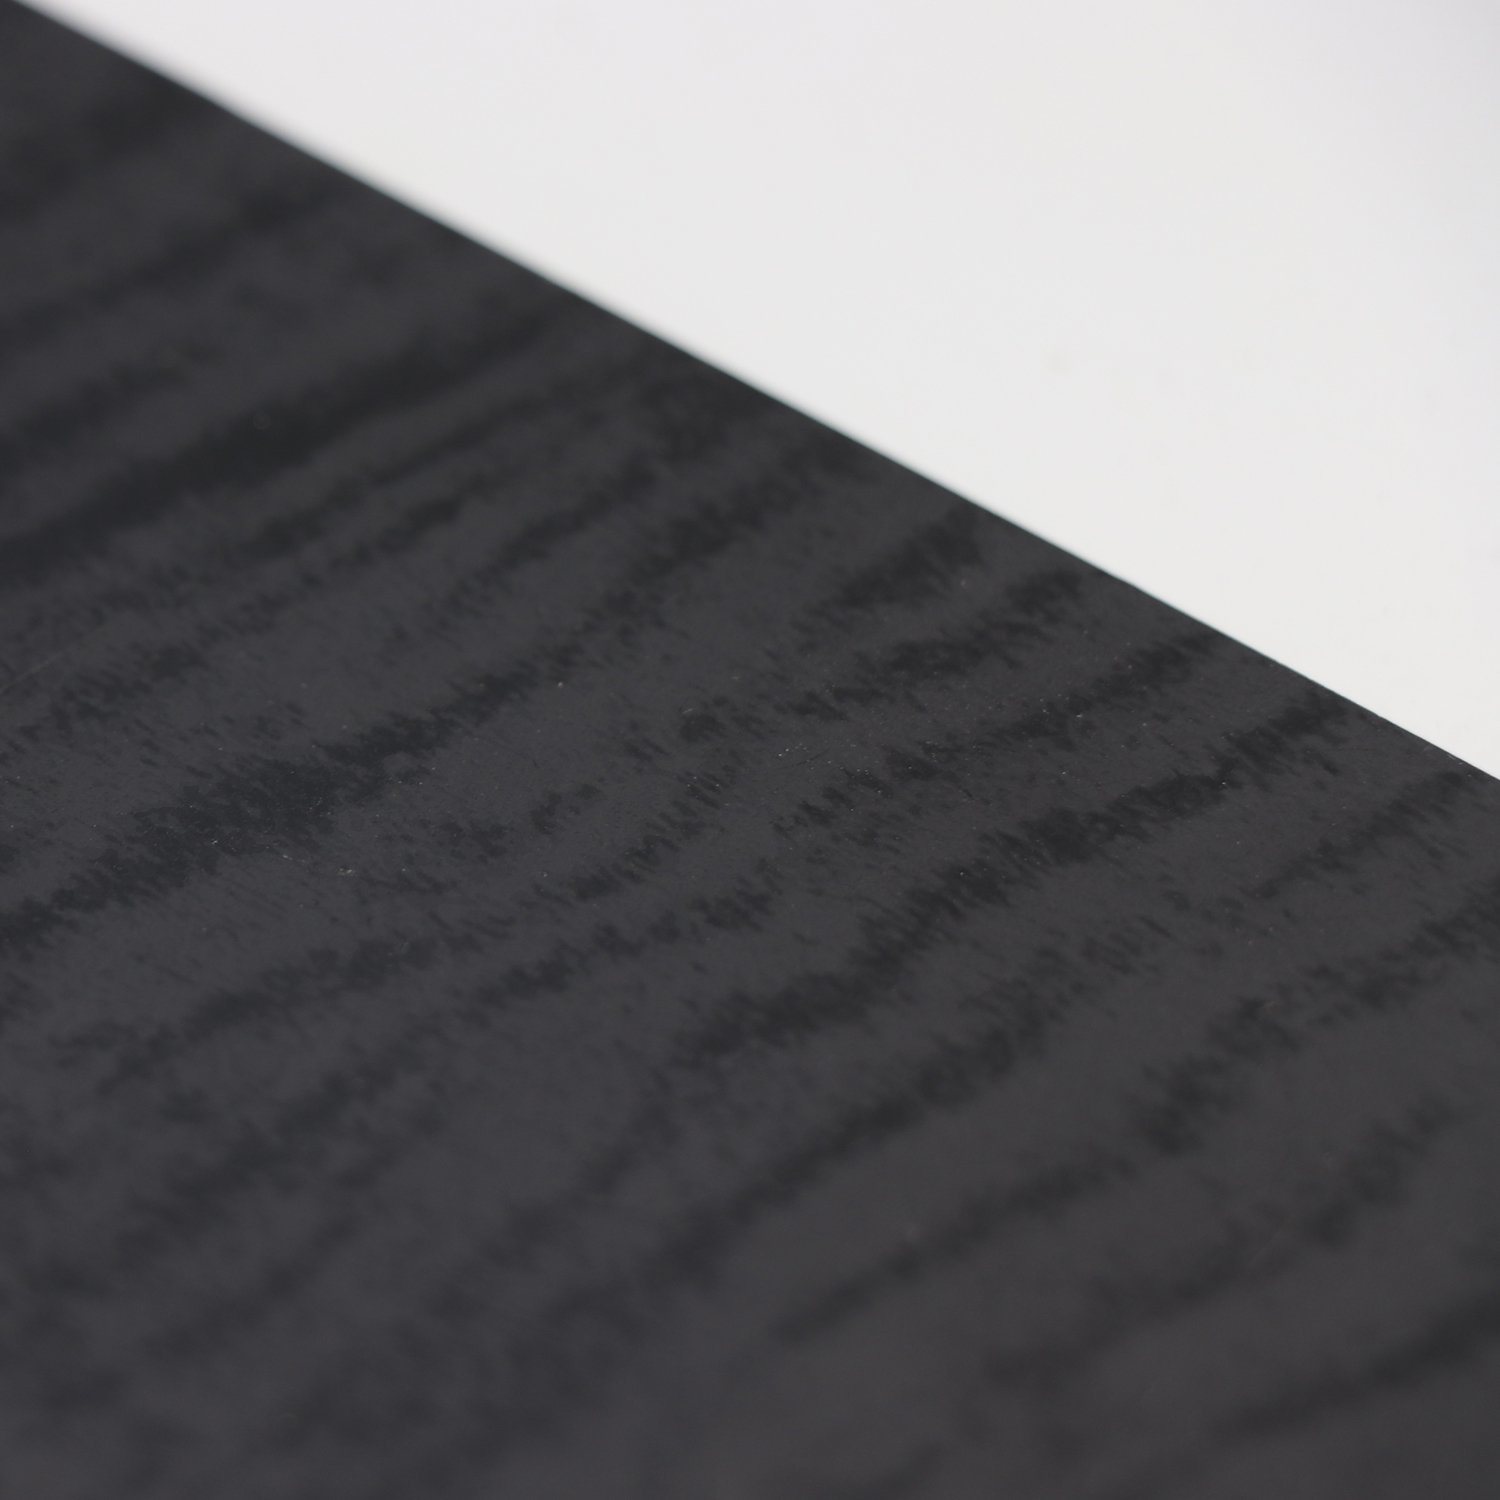 Black Grain Melamine Film Faced MDF 18mm Medium Density Fiberboard for Decoration